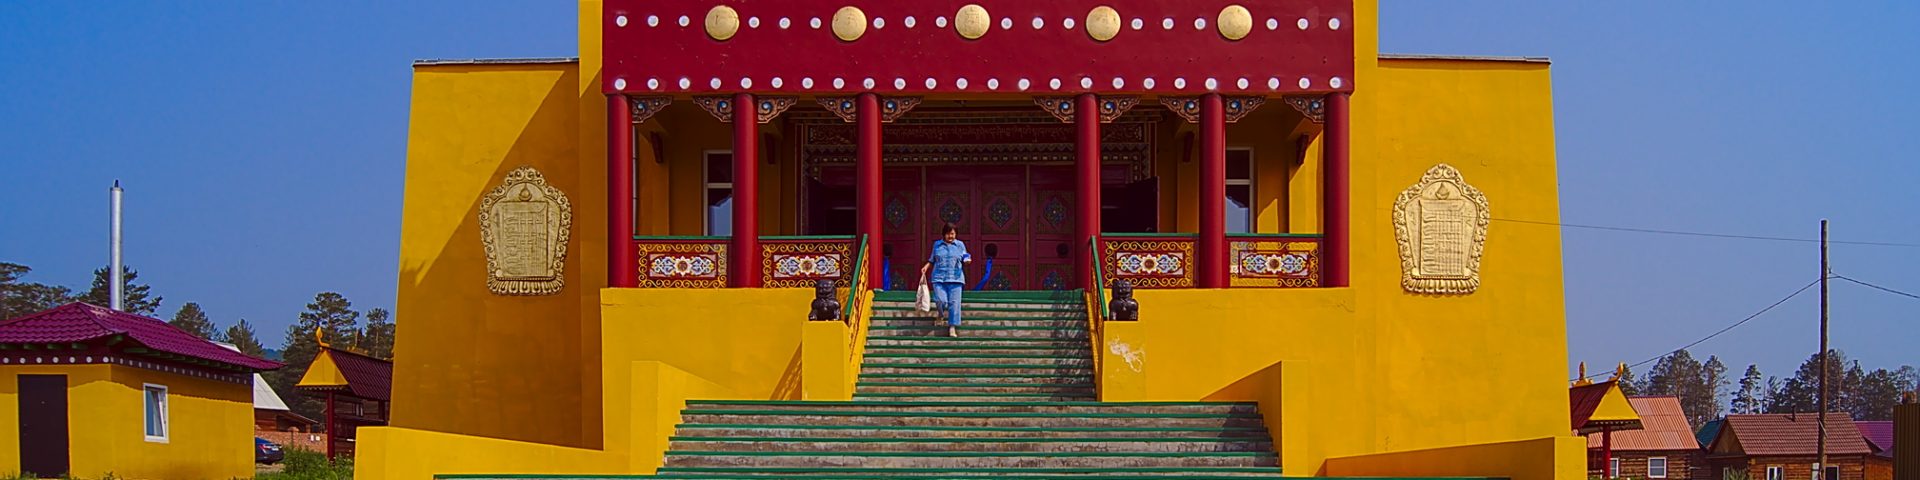 budhistischer Tempel Ulan ude